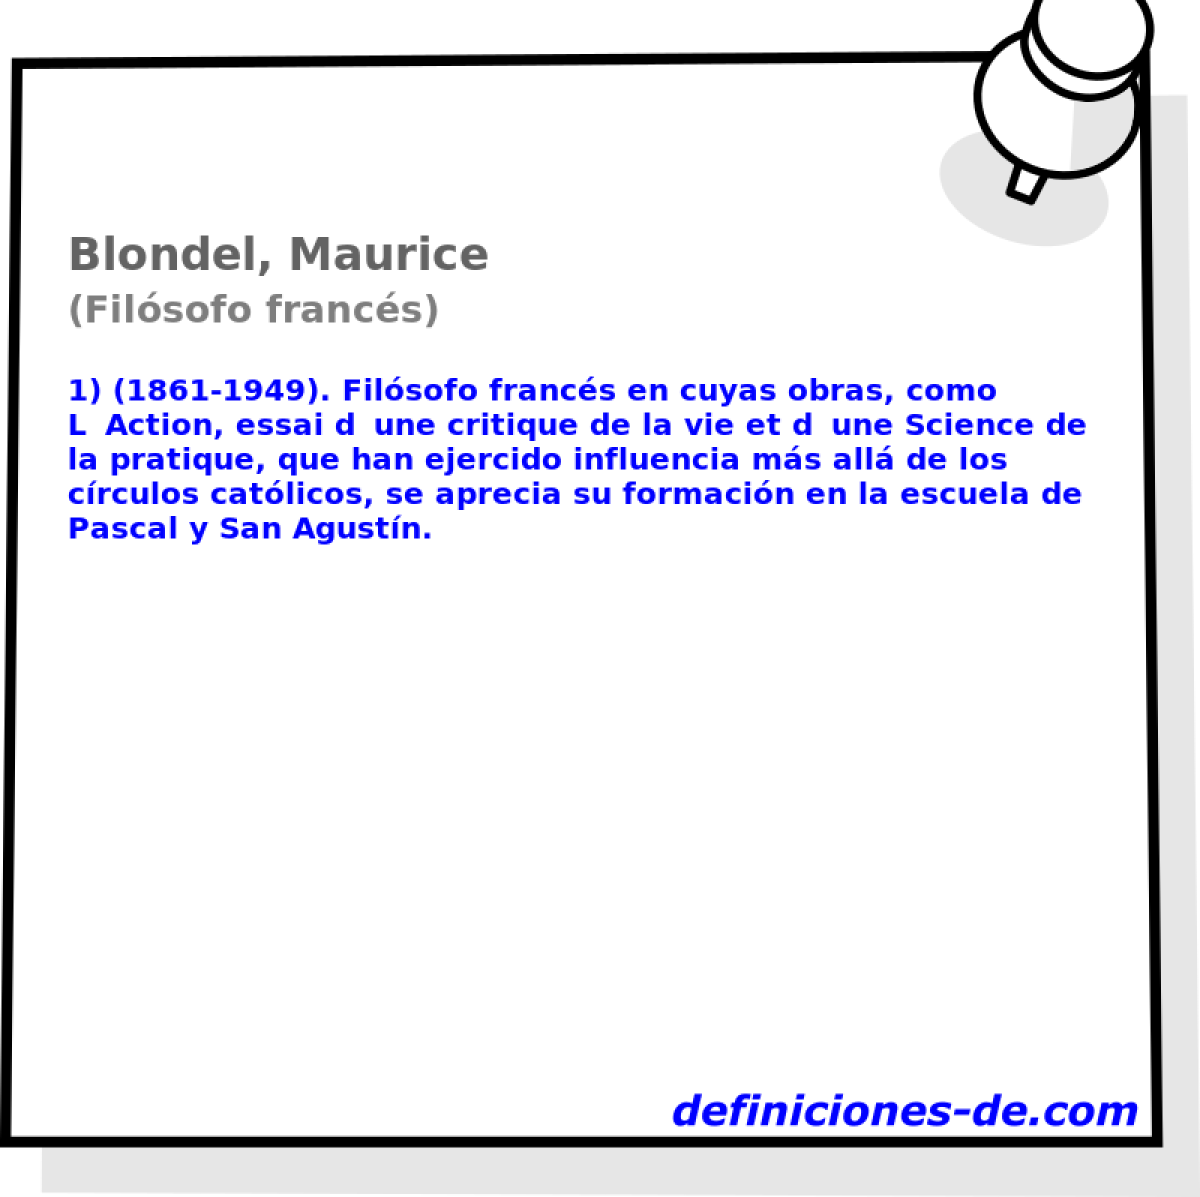 Blondel, Maurice (Filsofo francs)